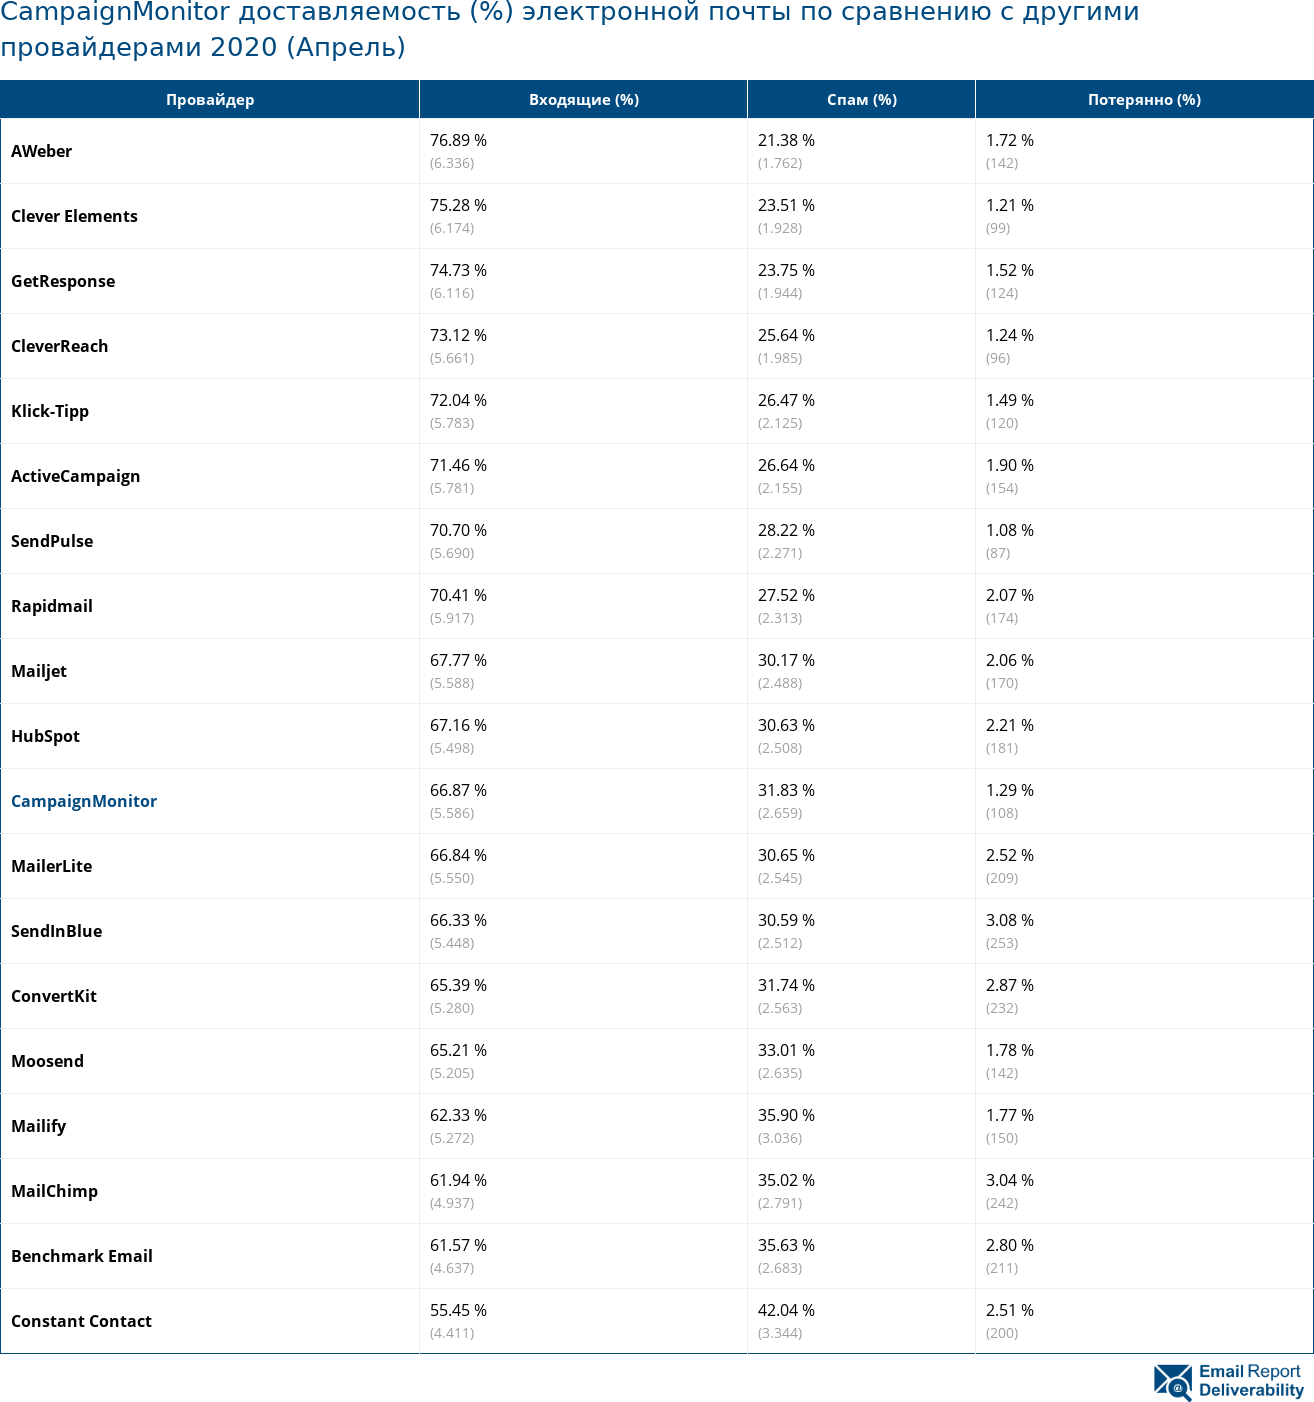 CampaignMonitor доставляемость (%) электронной почты по сравнению с другими провайдерами 2020 (Апрель)